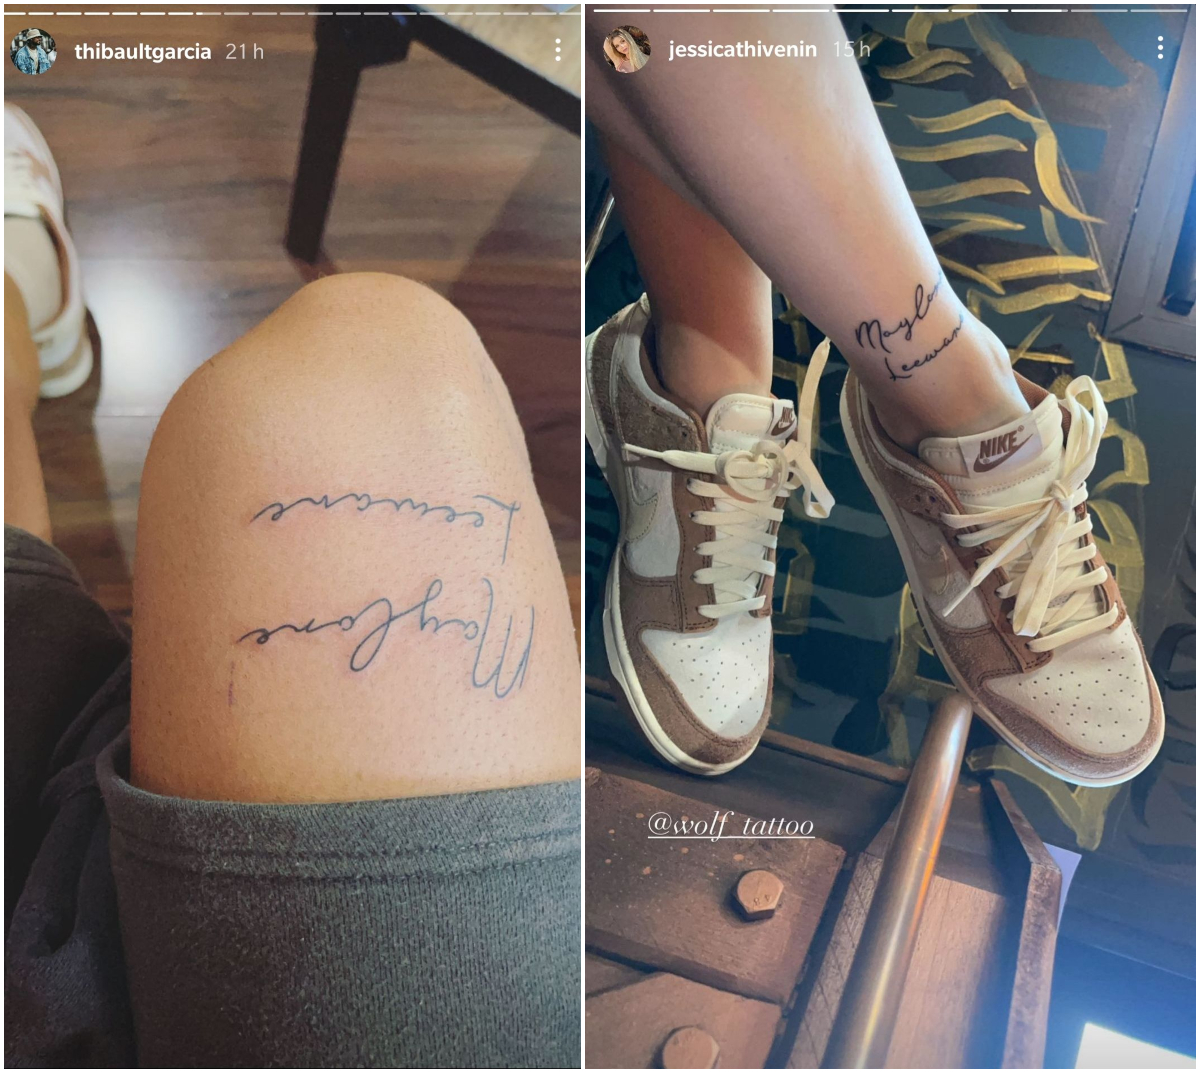  Jessica Thivenin et Thibault Garcia se font tatouer le prénom de leurs enfants @Instagram